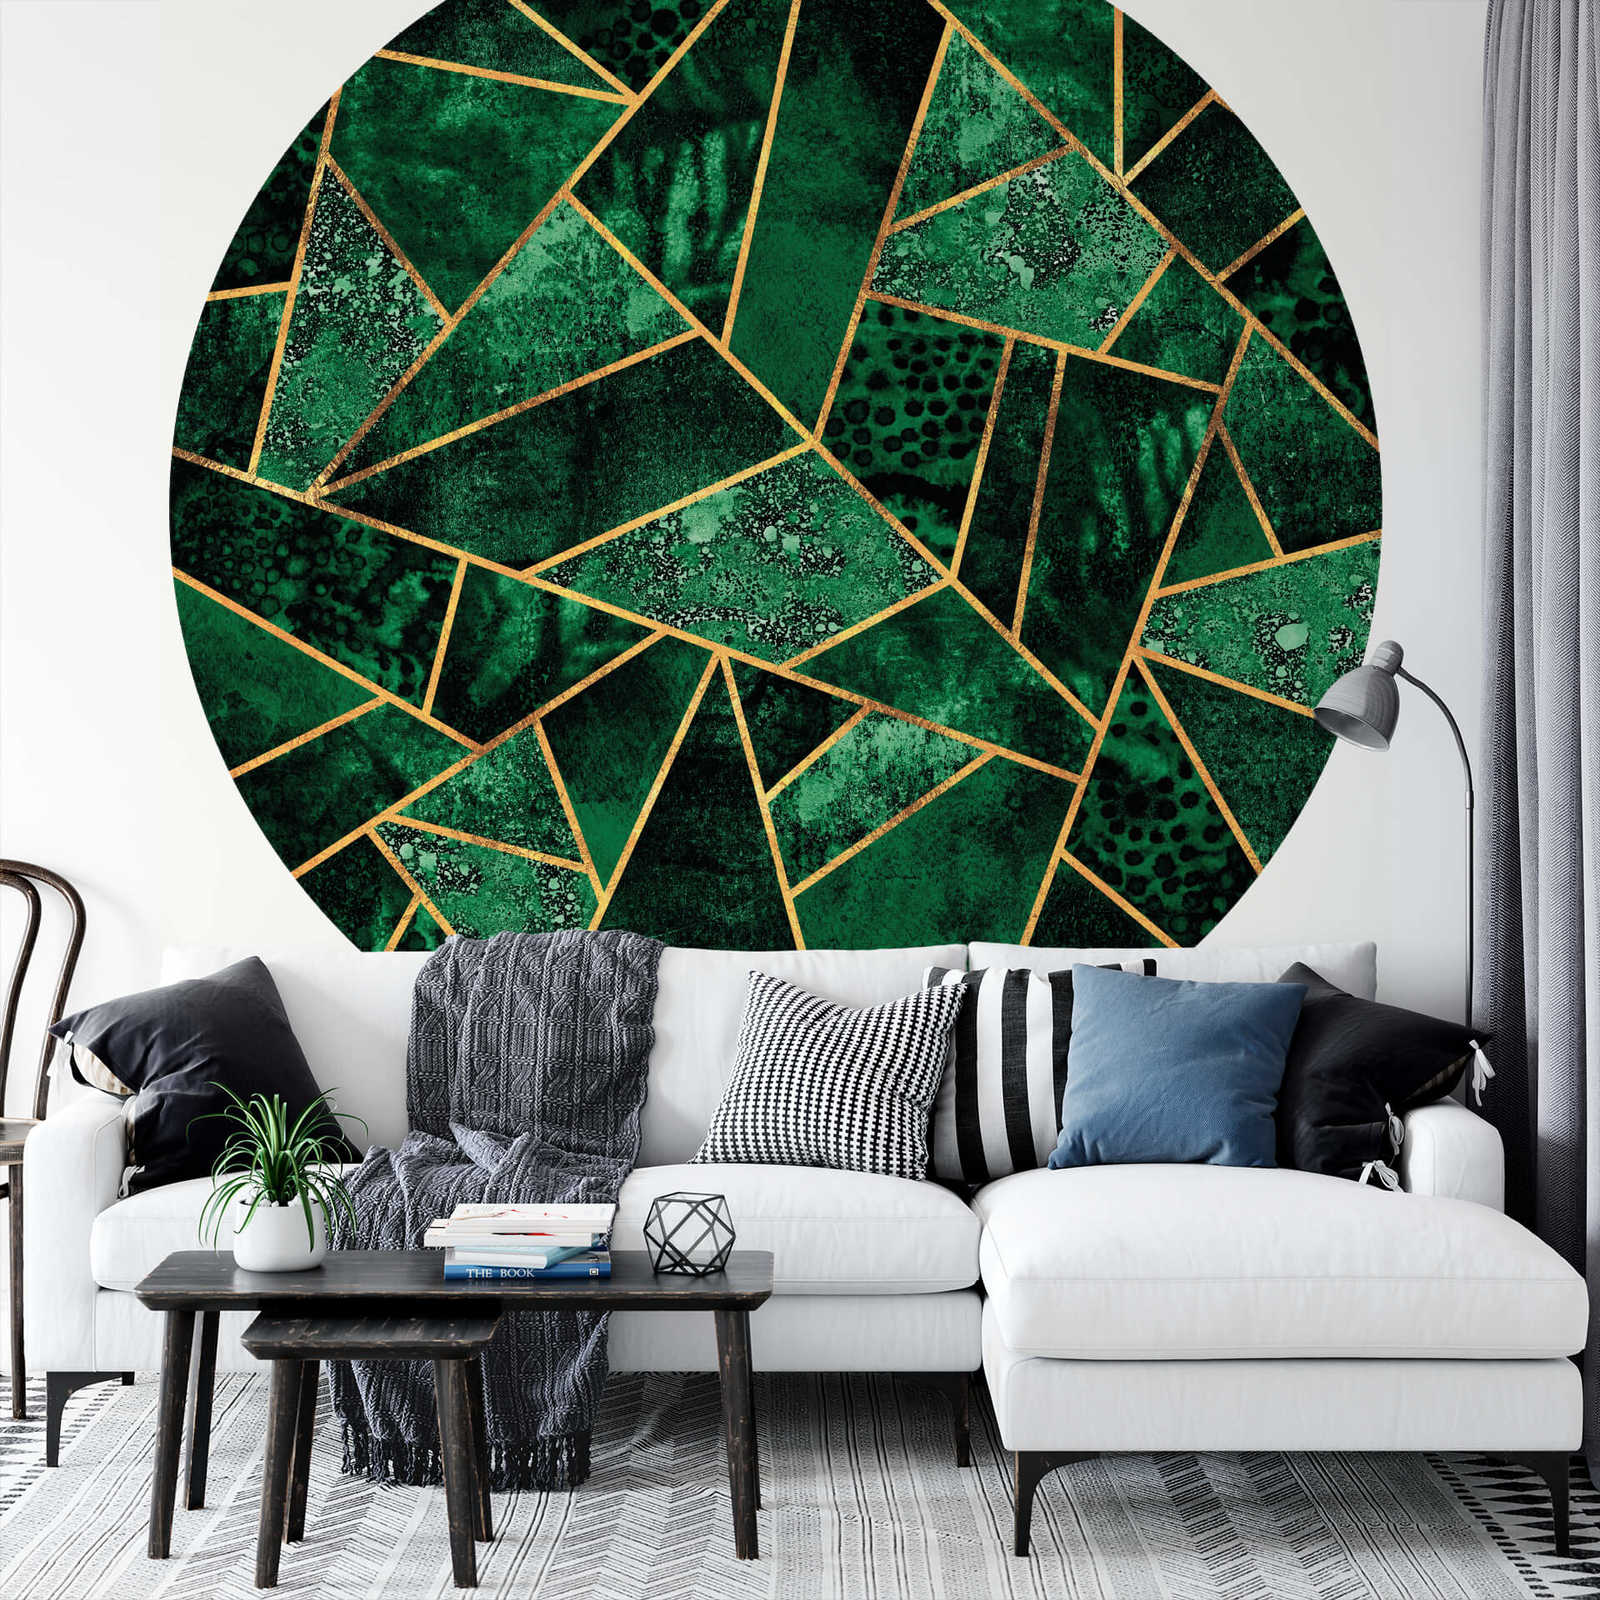             Papier peint panoramique rond formes géométriques, vert
        